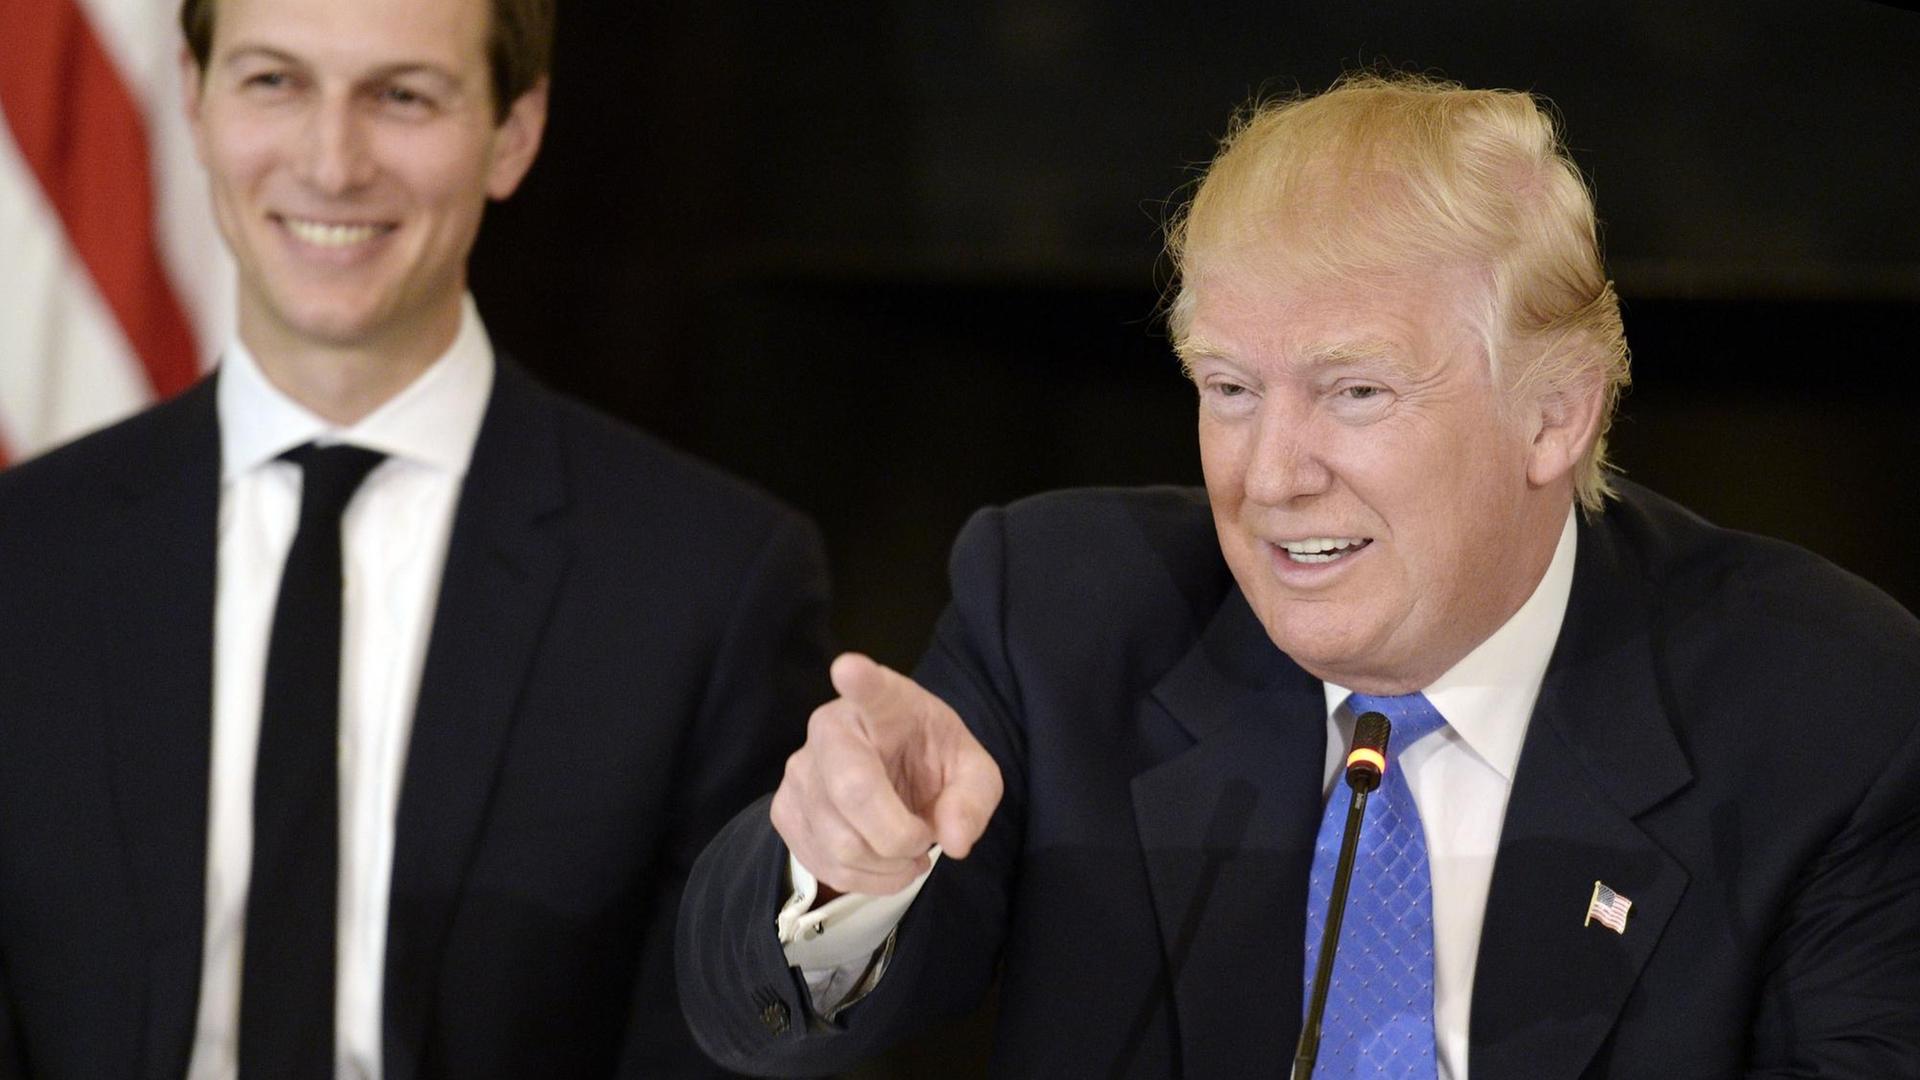 US-Präsident Donald Trump spricht und lacht dabei. Im Hintergrund ist sein Schwiegersohn Jared Kushner zu sehen.